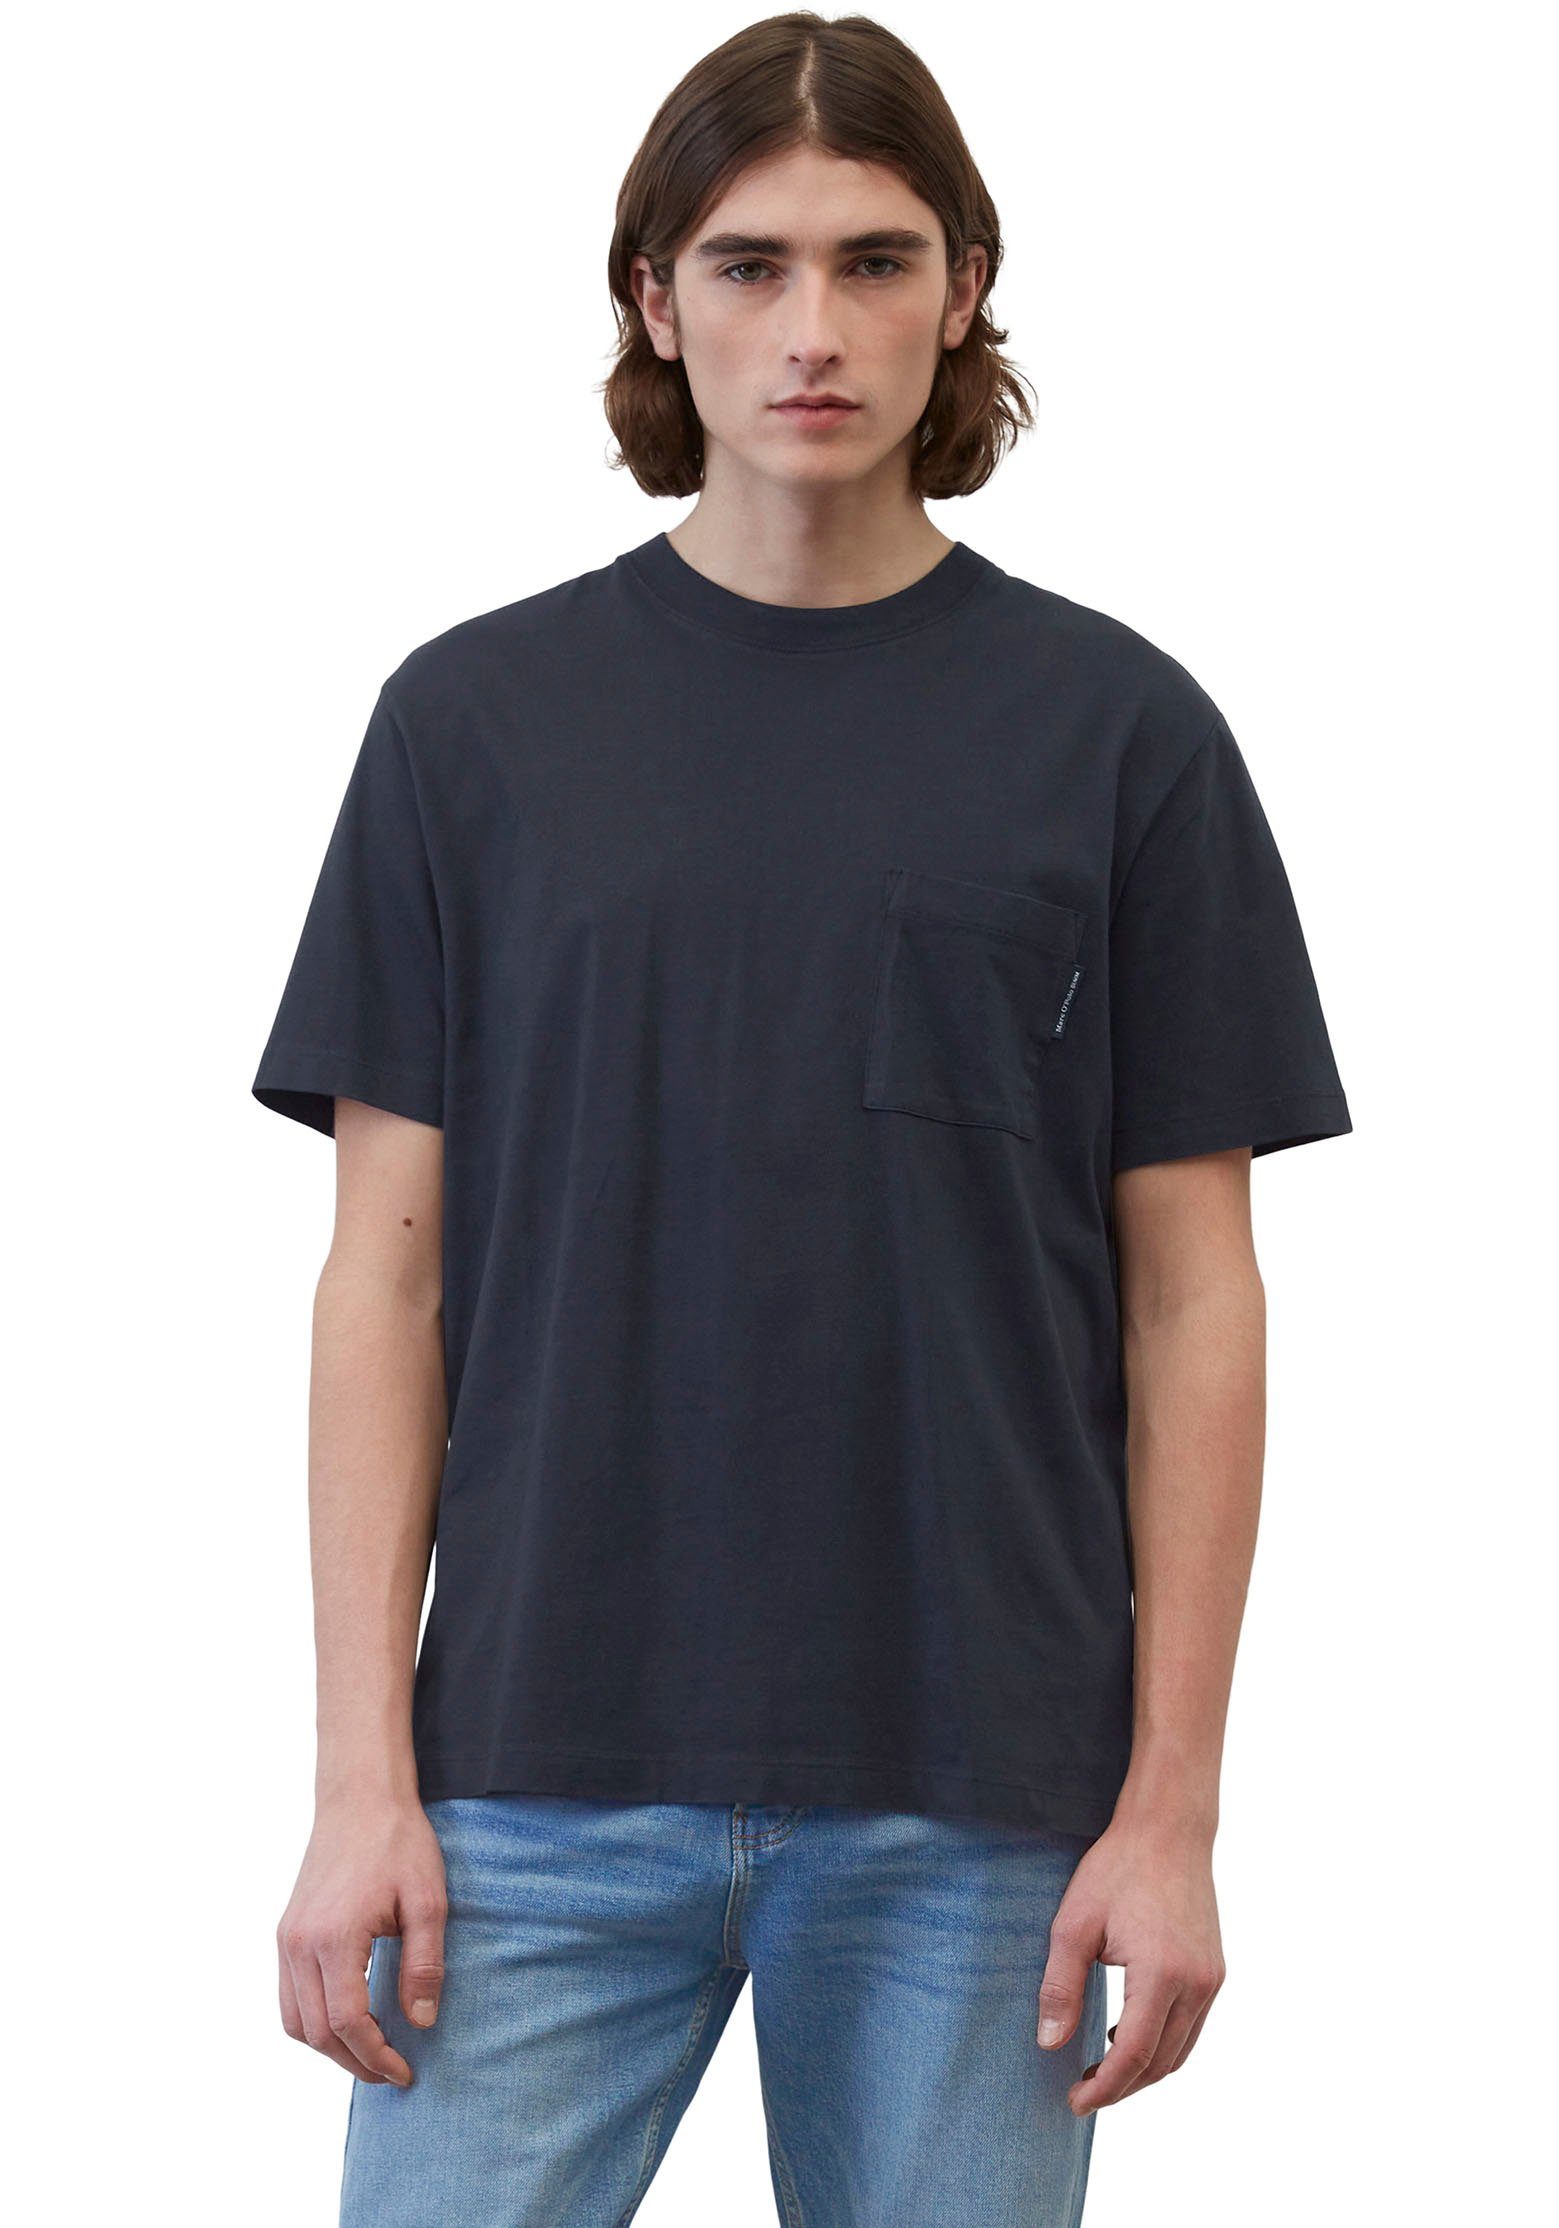 aufgesetzter T-Shirt Brusttasche Marc mit O'Polo dunkelblau DENIM